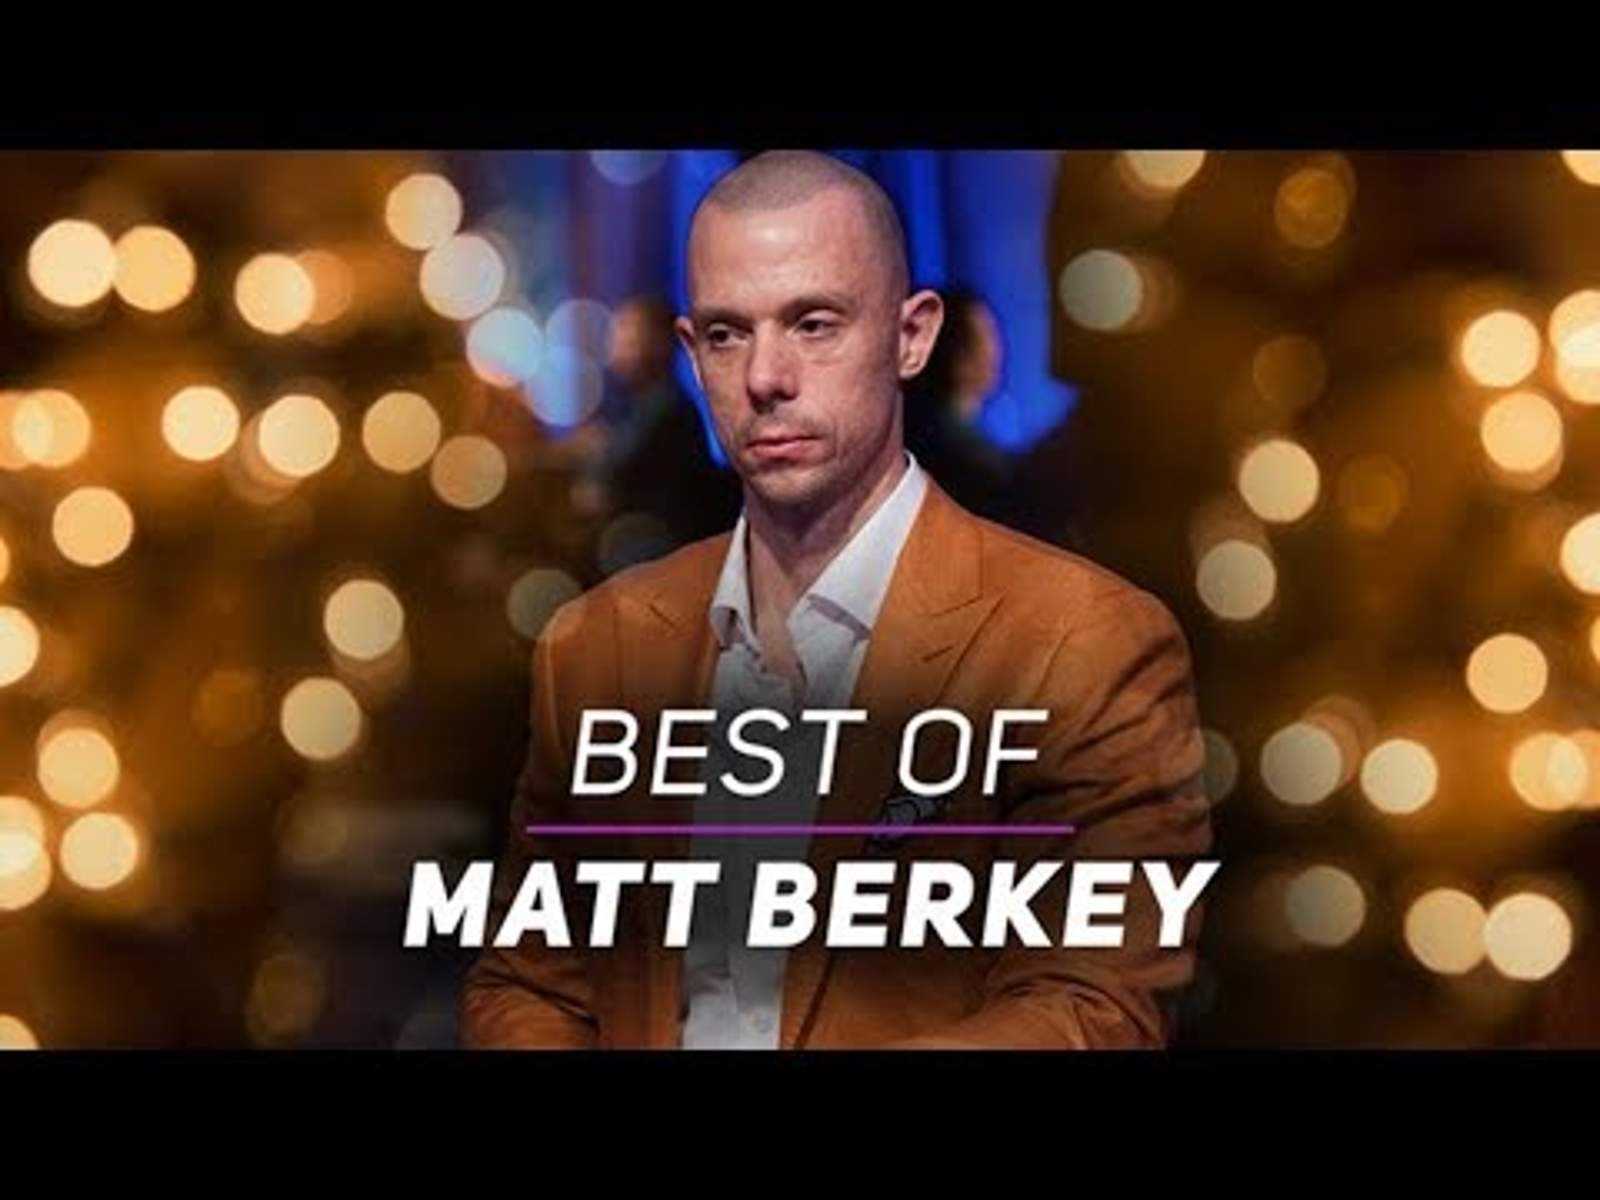 Best of Matt Berkey